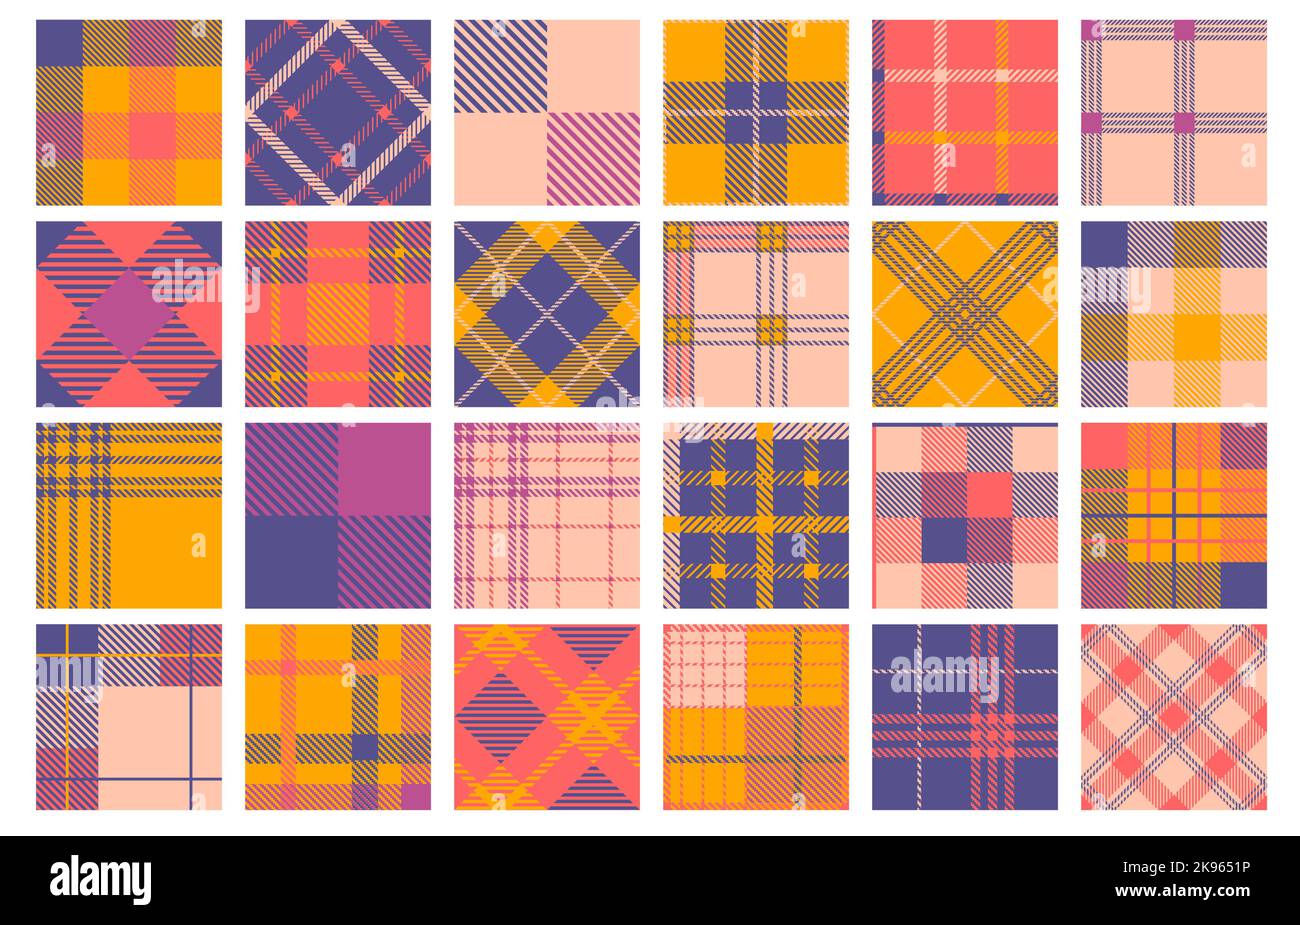 Tartanmuster. Nahtloses schottisches Karomuster, moderner geometrischer Tweed-Stoff für den Herbst in der Wintermode im Textildesign. Vektorstruktur Stock Vektor